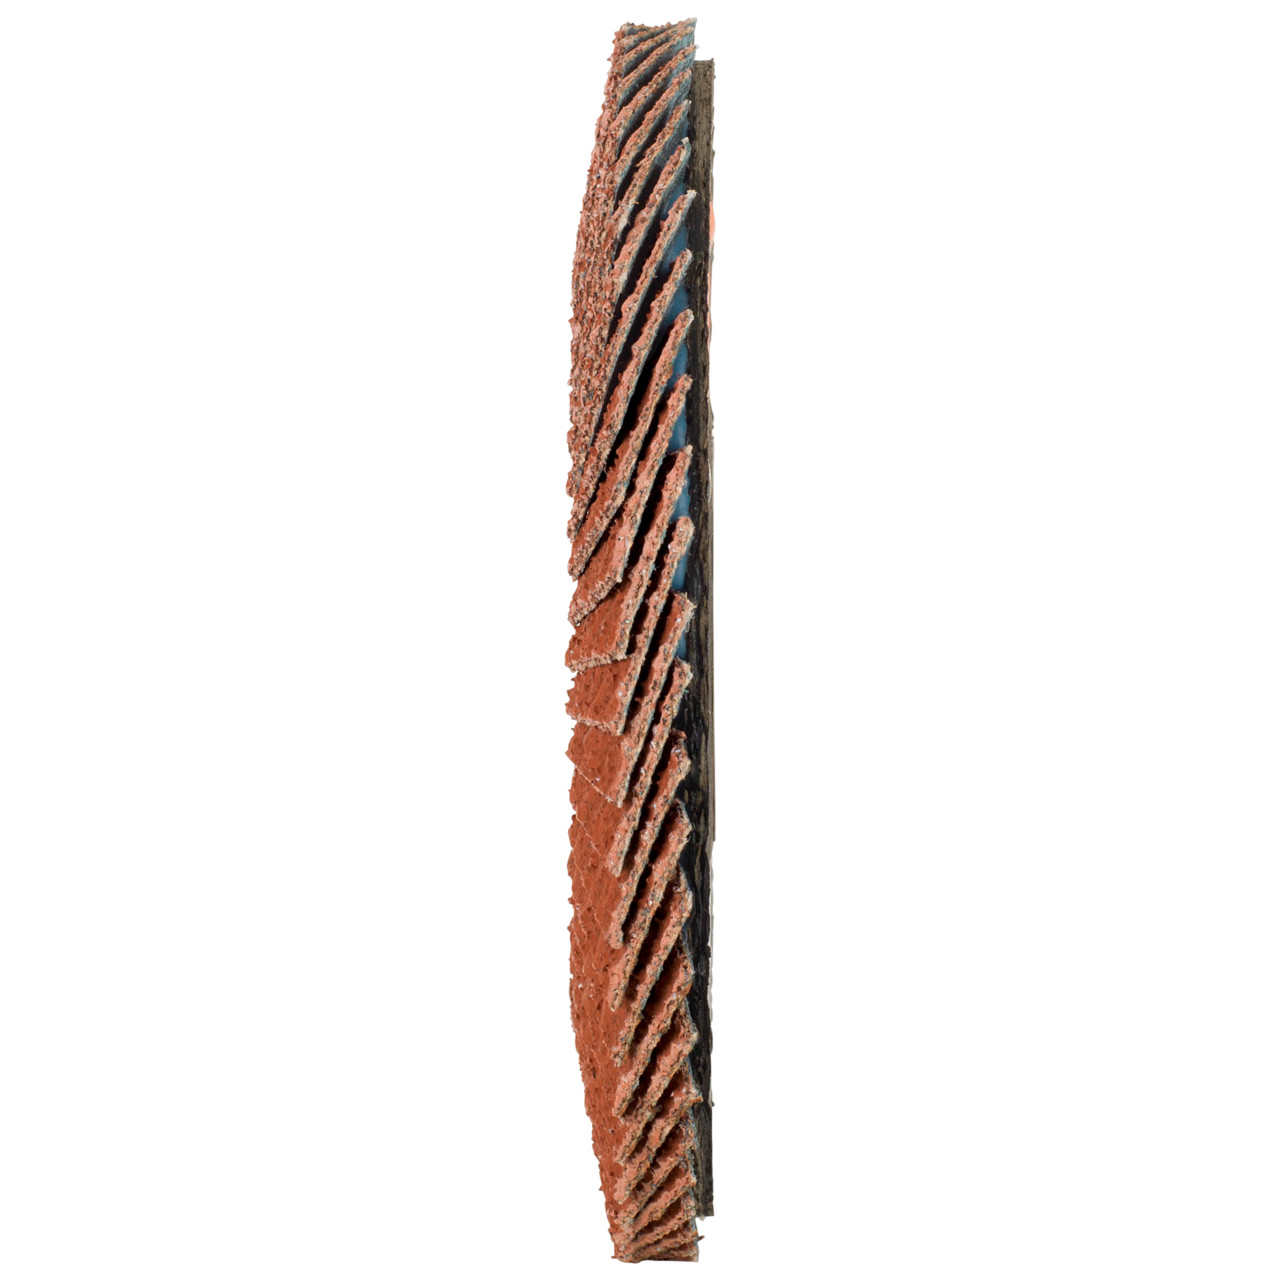 Tyrolit Arandela de seguridad dentada DxH 115x22,23 Para metales no férricos, P60, forma: 28A - versión recta (versión con cuerpo de soporte de fibra de vidrio), Art. 707155